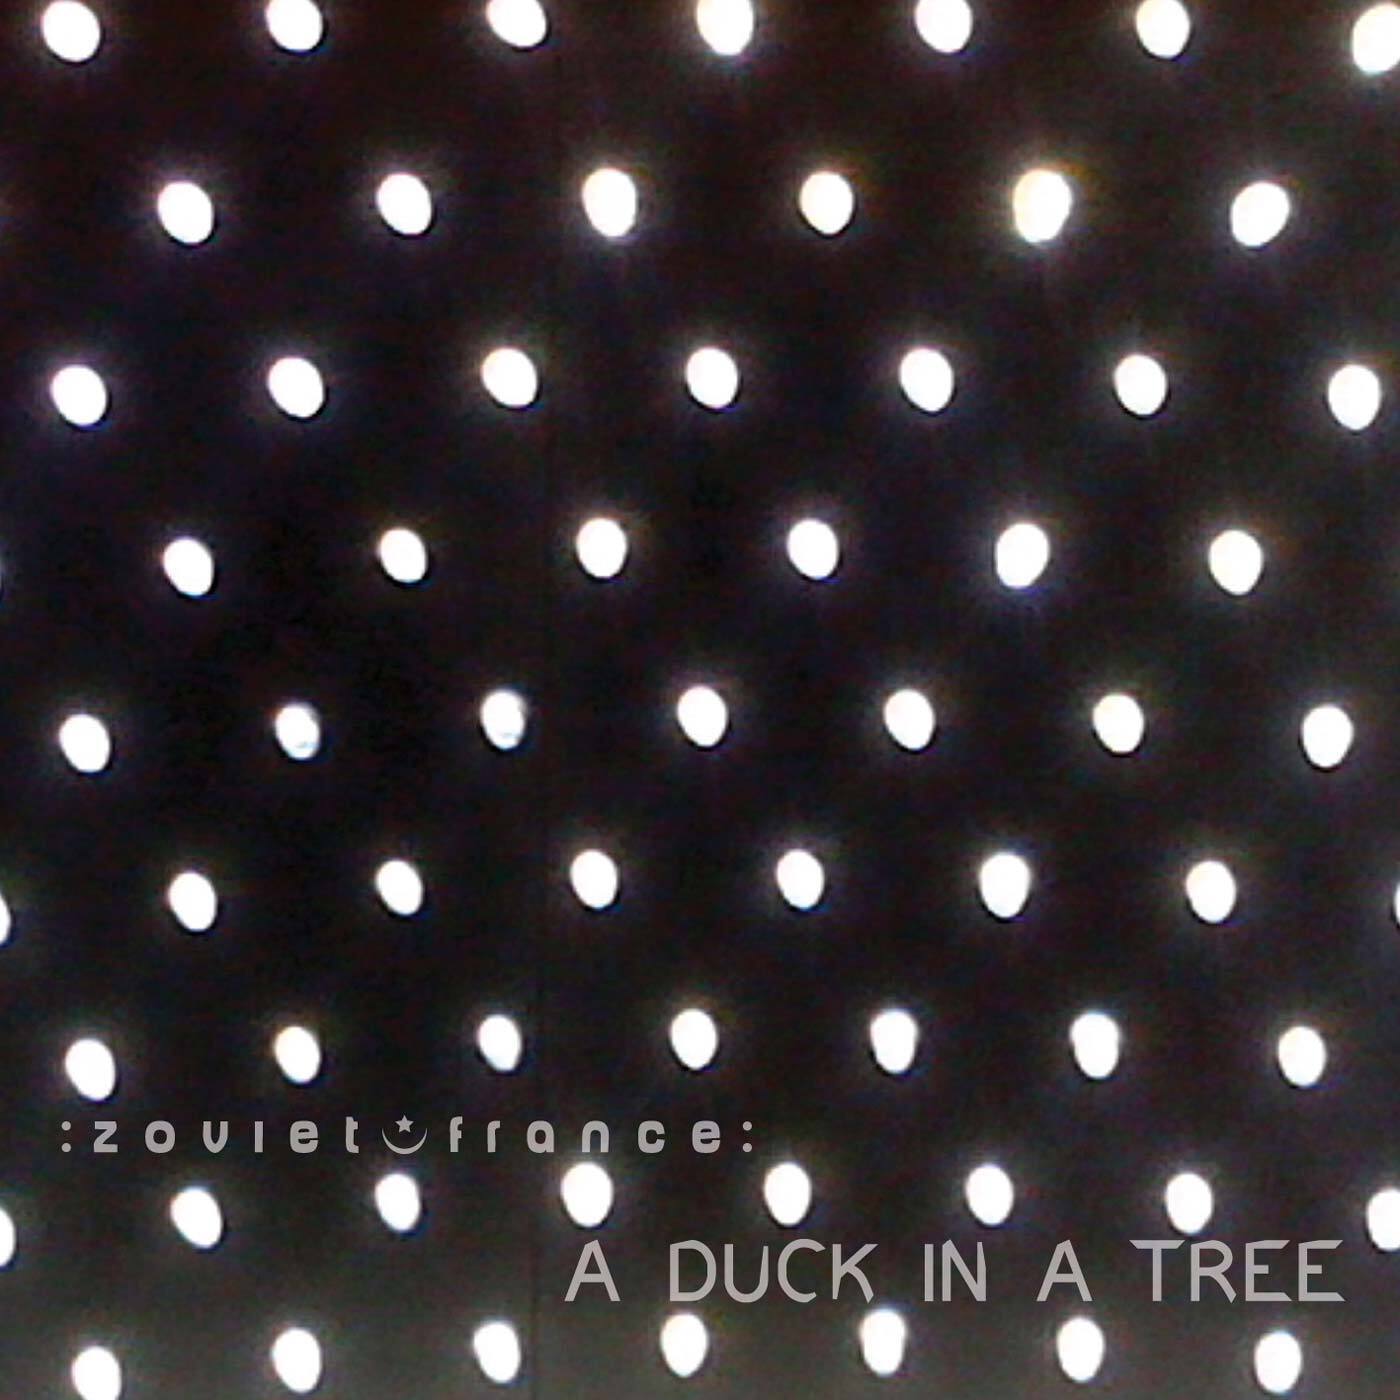 A-Duck-in-a-Tree-2014-05-10-_-A-Broken-S